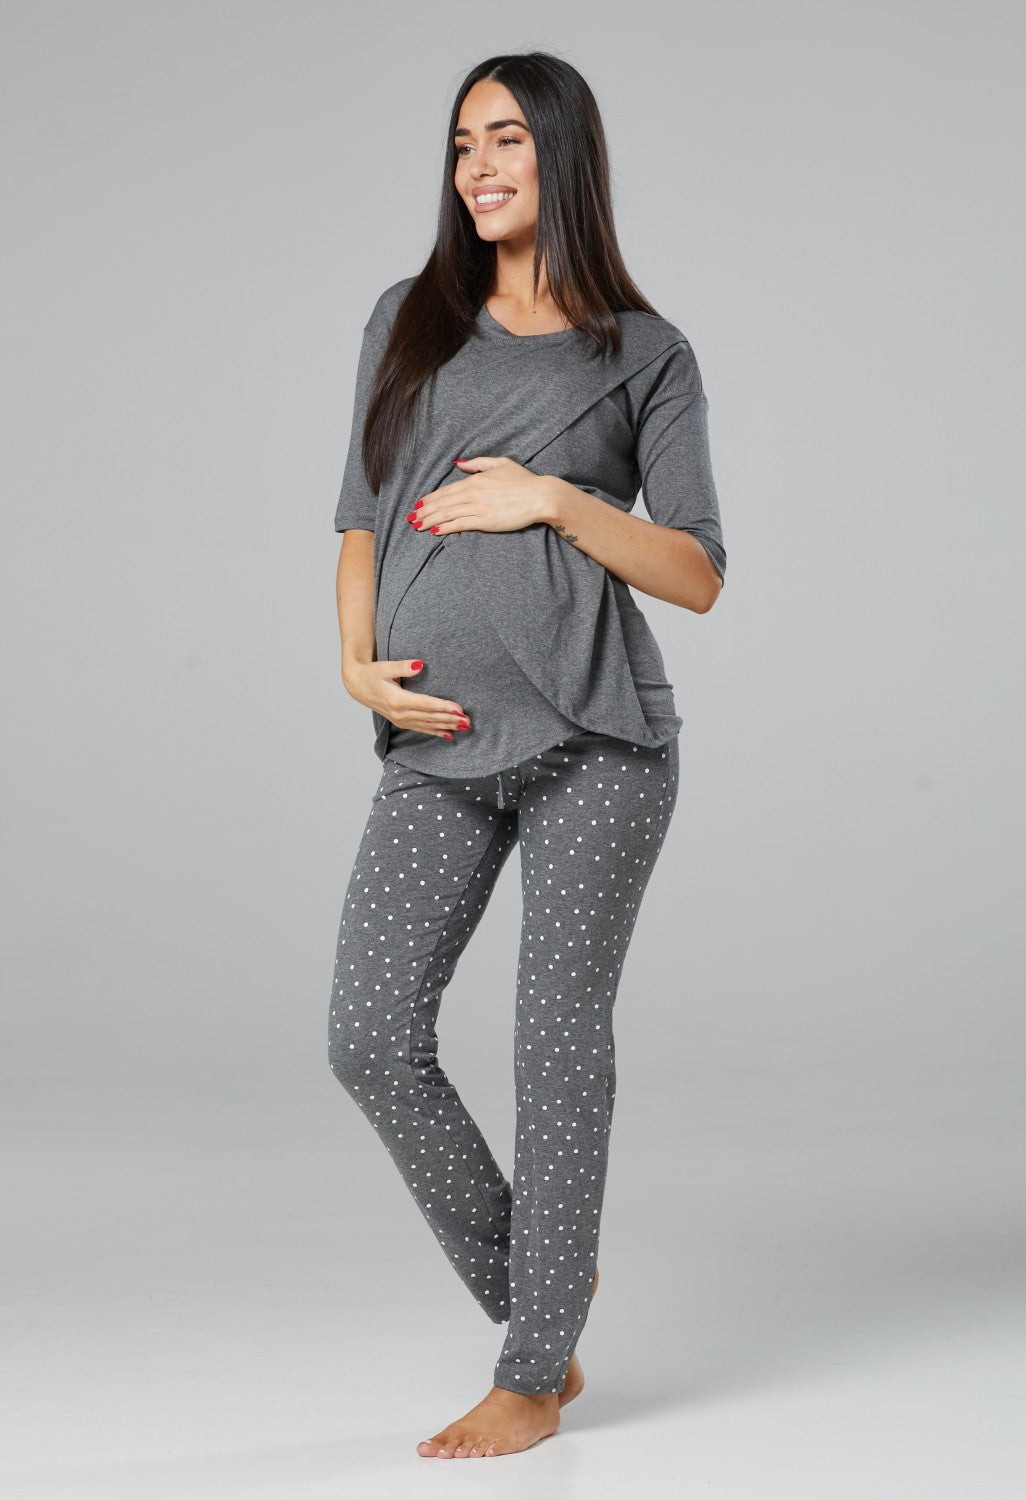 Maternity Nursing Pyjamas Loungewear Set